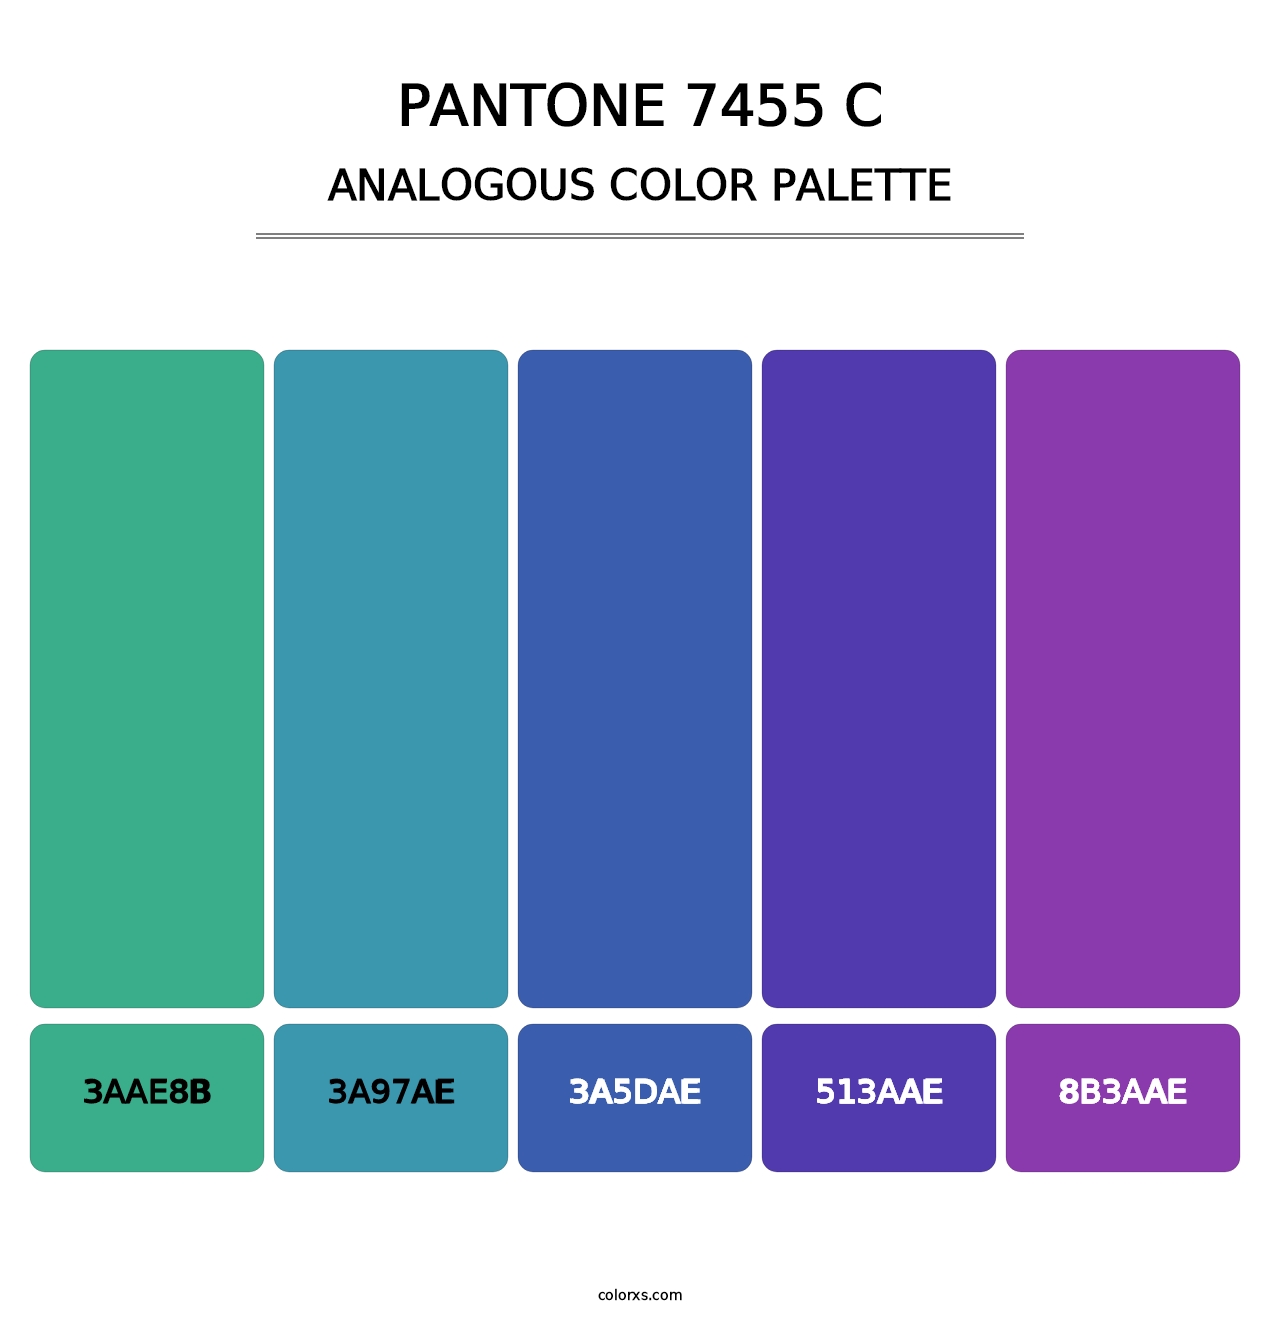 PANTONE 7455 C - Analogous Color Palette